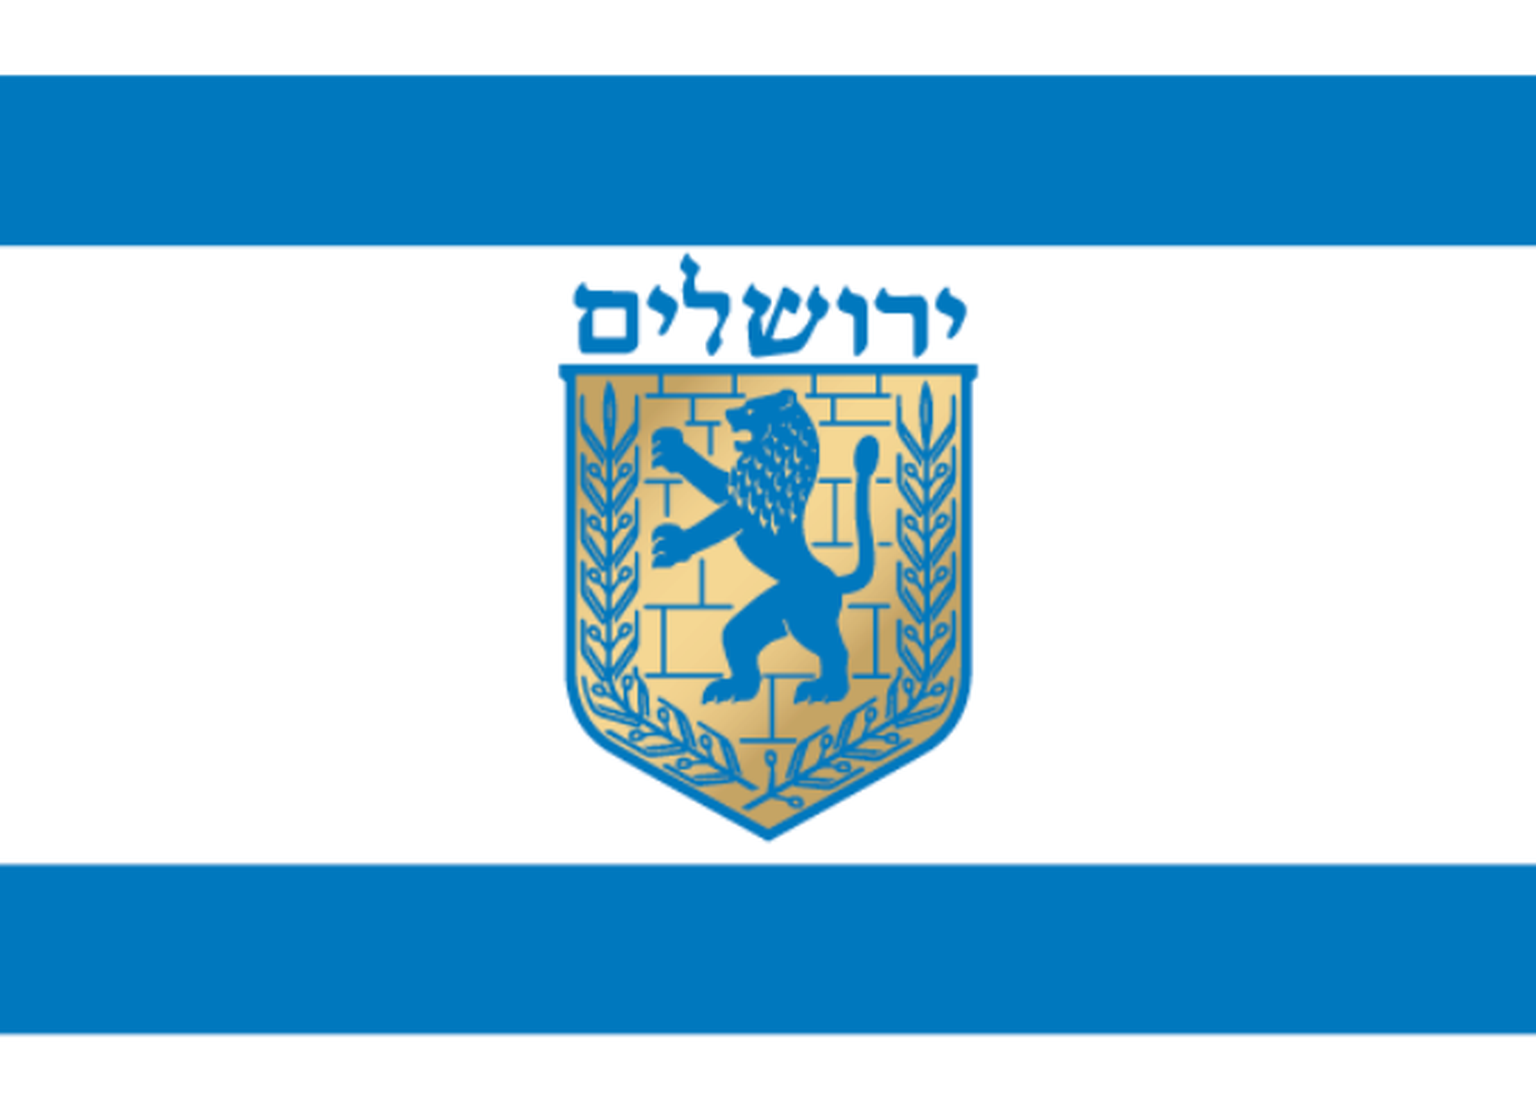 Jeruusalemm on Iisraeli üks põnevamaid reisisihte. Pildil on Jeruusalemma Iisraeli omavalitsuse lipp.